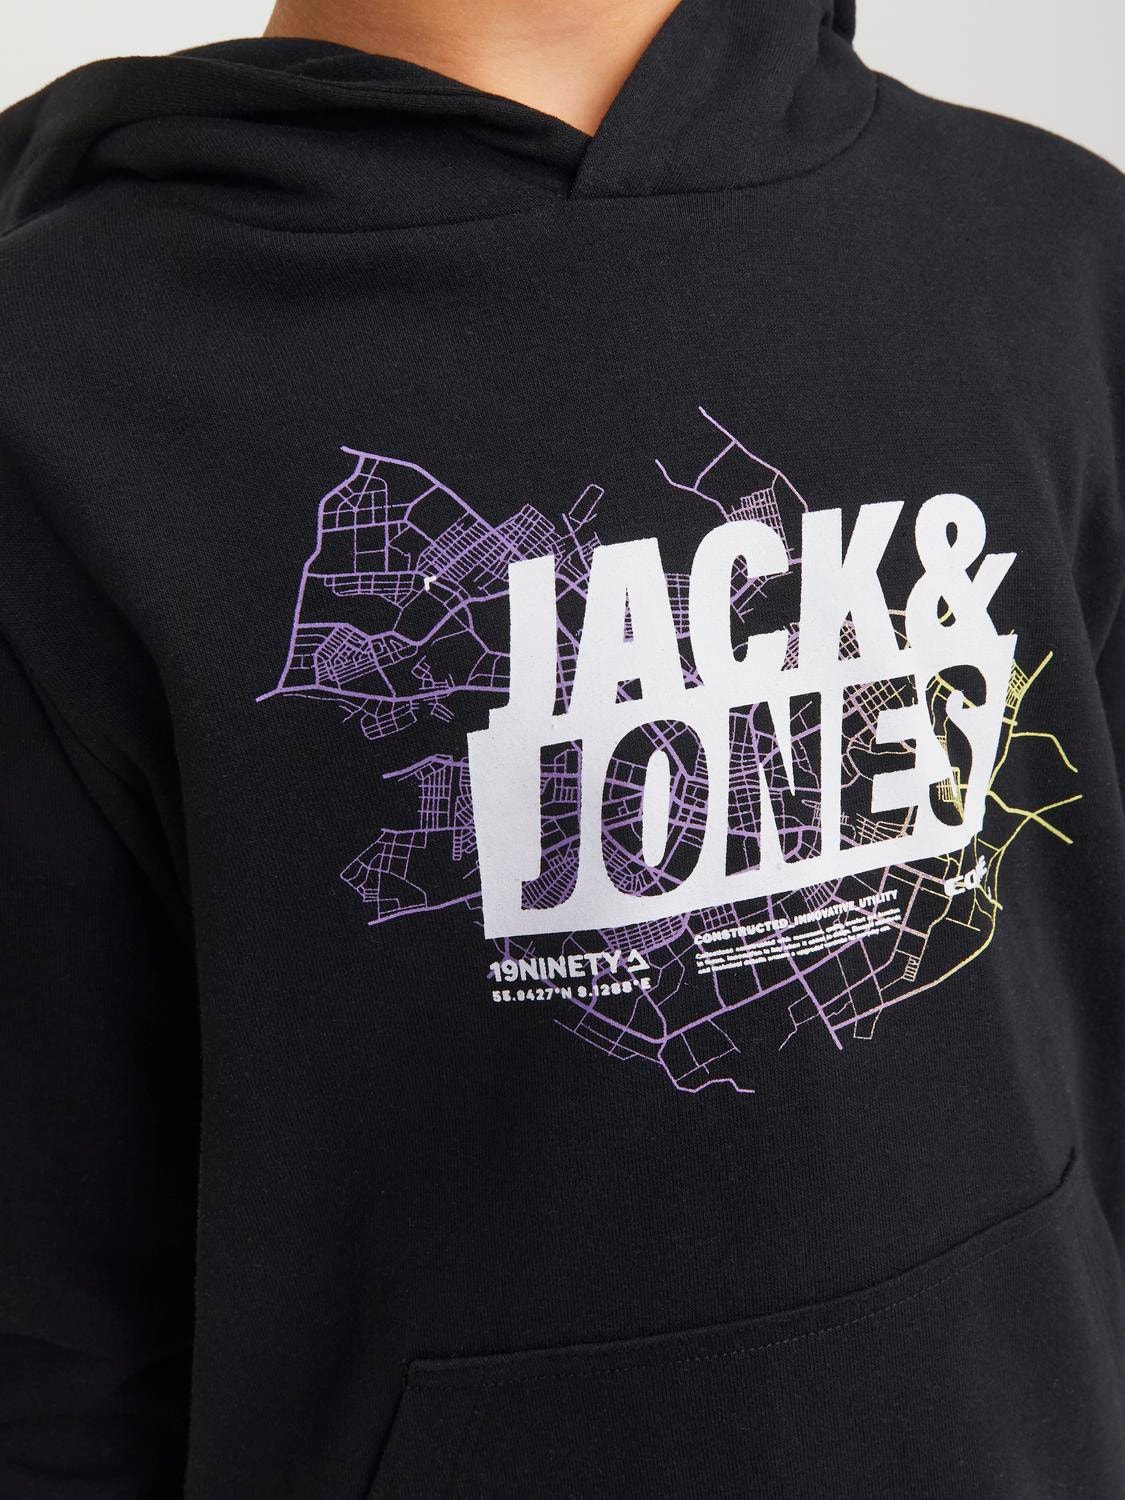 Jack & Jones Sweat à capuche Imprimé Pour les garçons -Black - 12253990